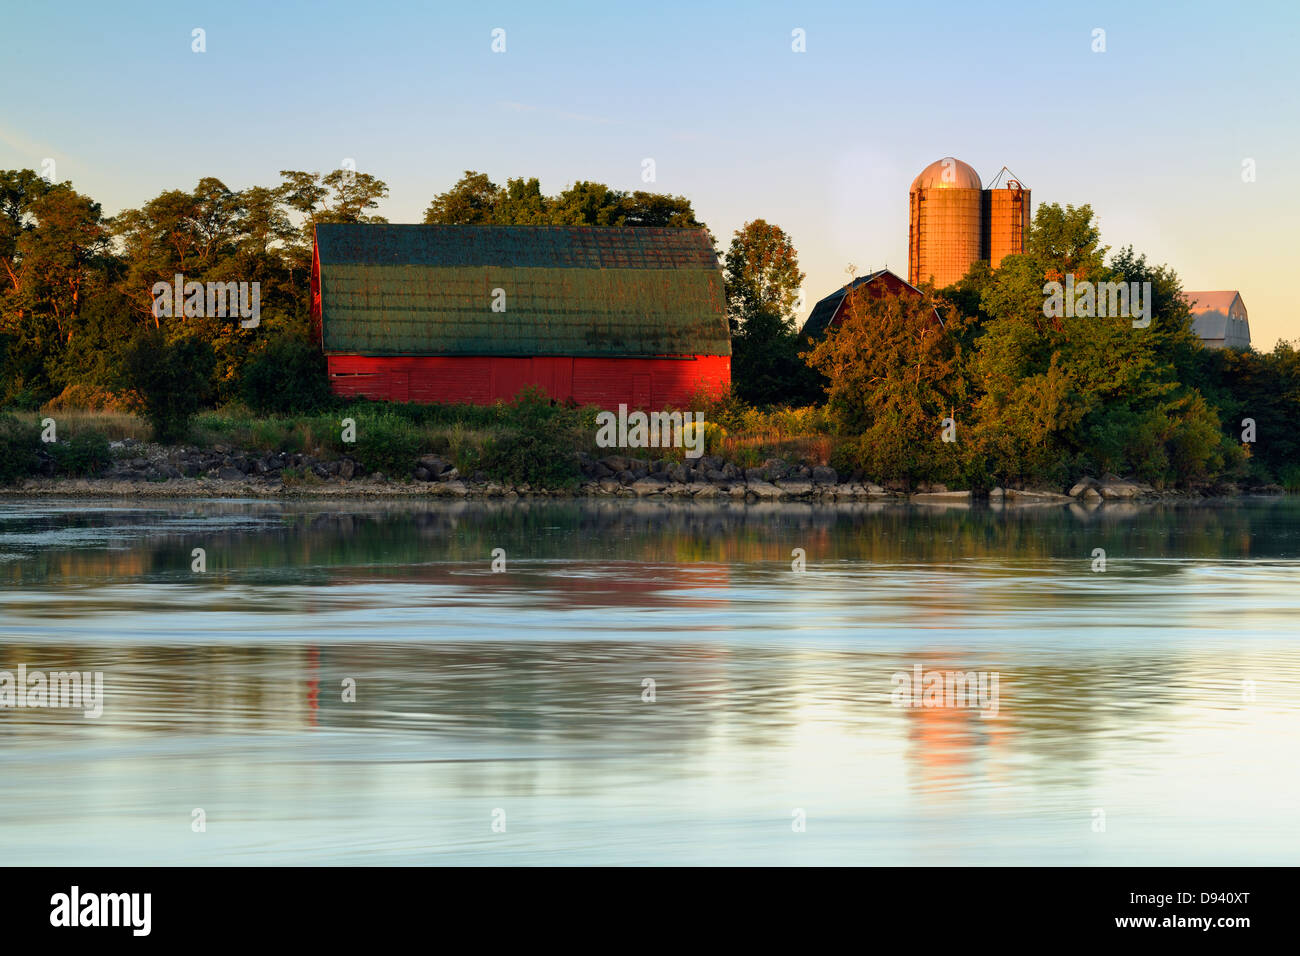 Le vieillissement de la grange rouge reflétée dans le lac Gibson hydro navigable contrôlé à l'aube Thorold Ontario Canada Banque D'Images